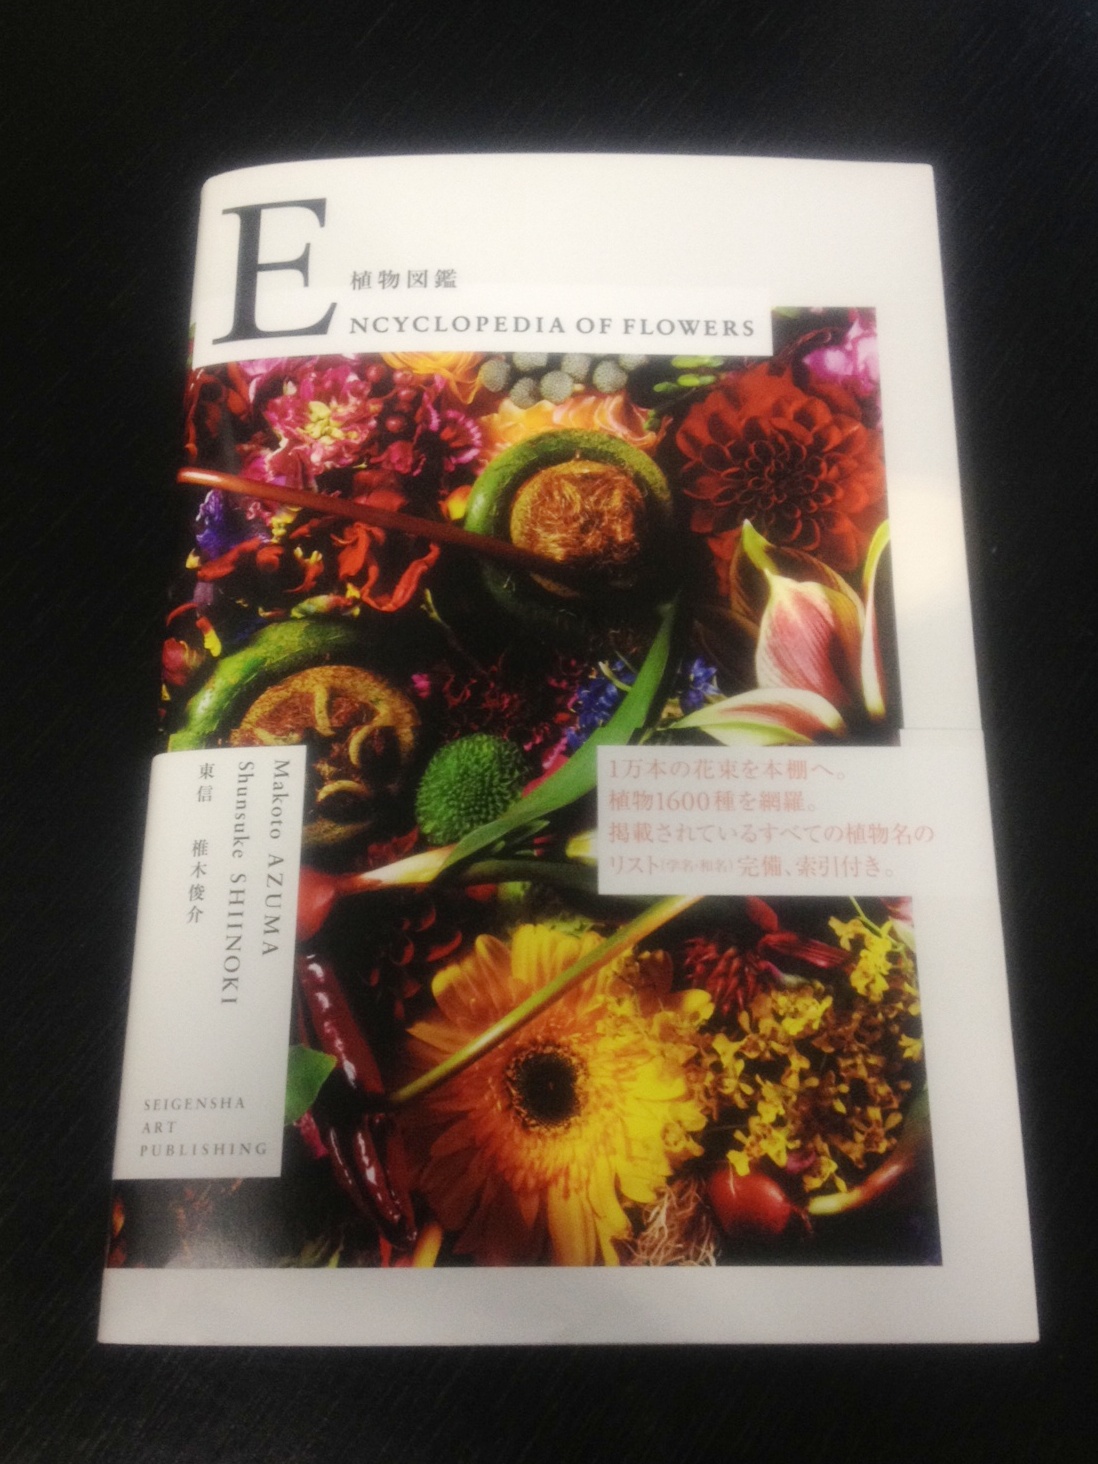 現代版の『植物図鑑』東信氏の「Encyclopedia of Flowers」_a0138976_21403081.jpg